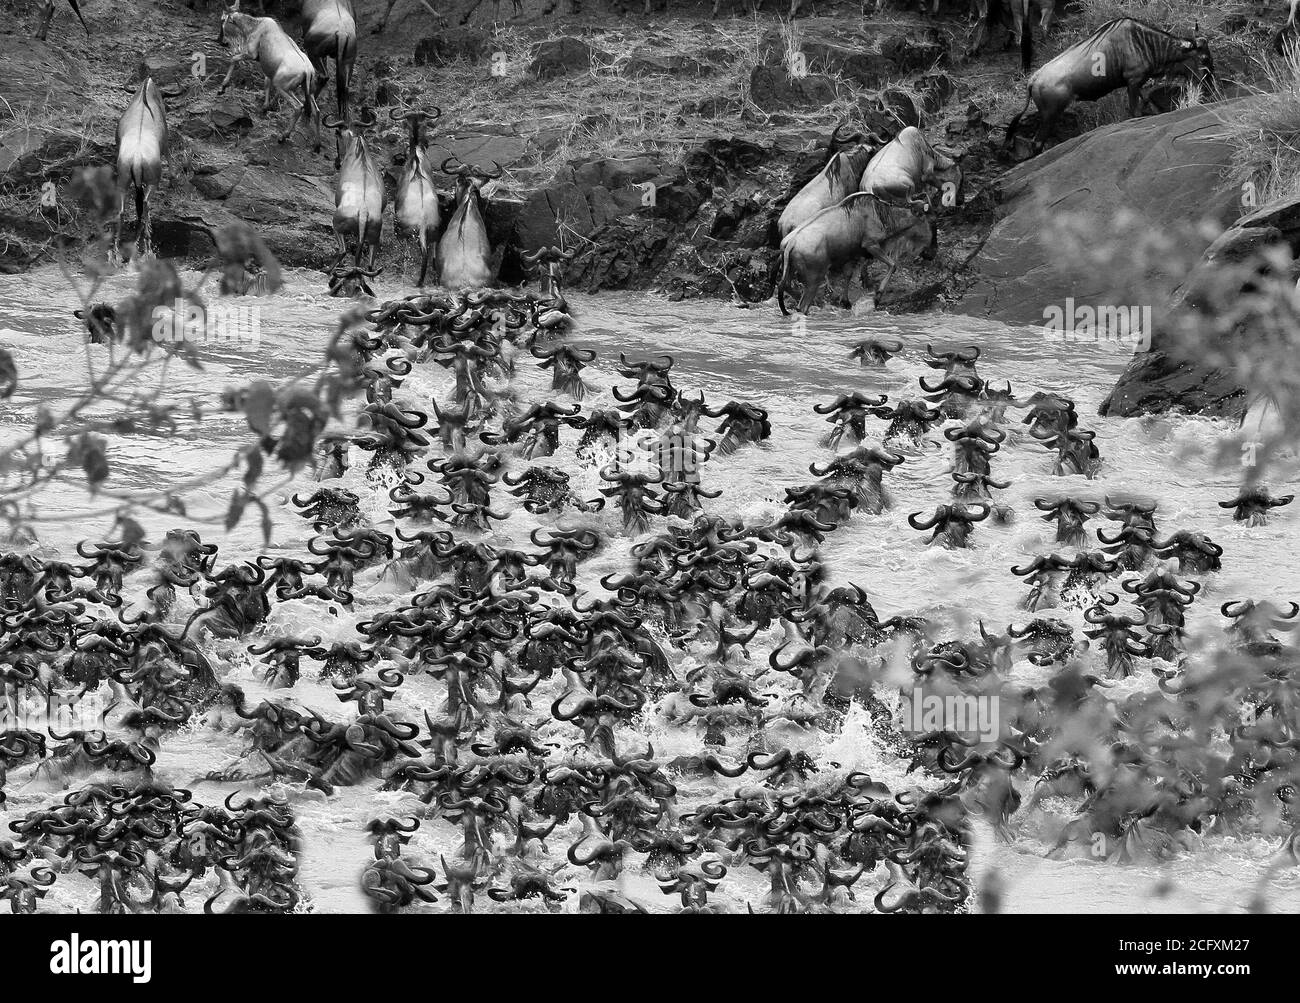 Wildebeest Migration, molti wildebeest che attraversano il fiume Mara per arrivare a pascoli più verdi. Un evento che si svolge ogni anno Foto Stock